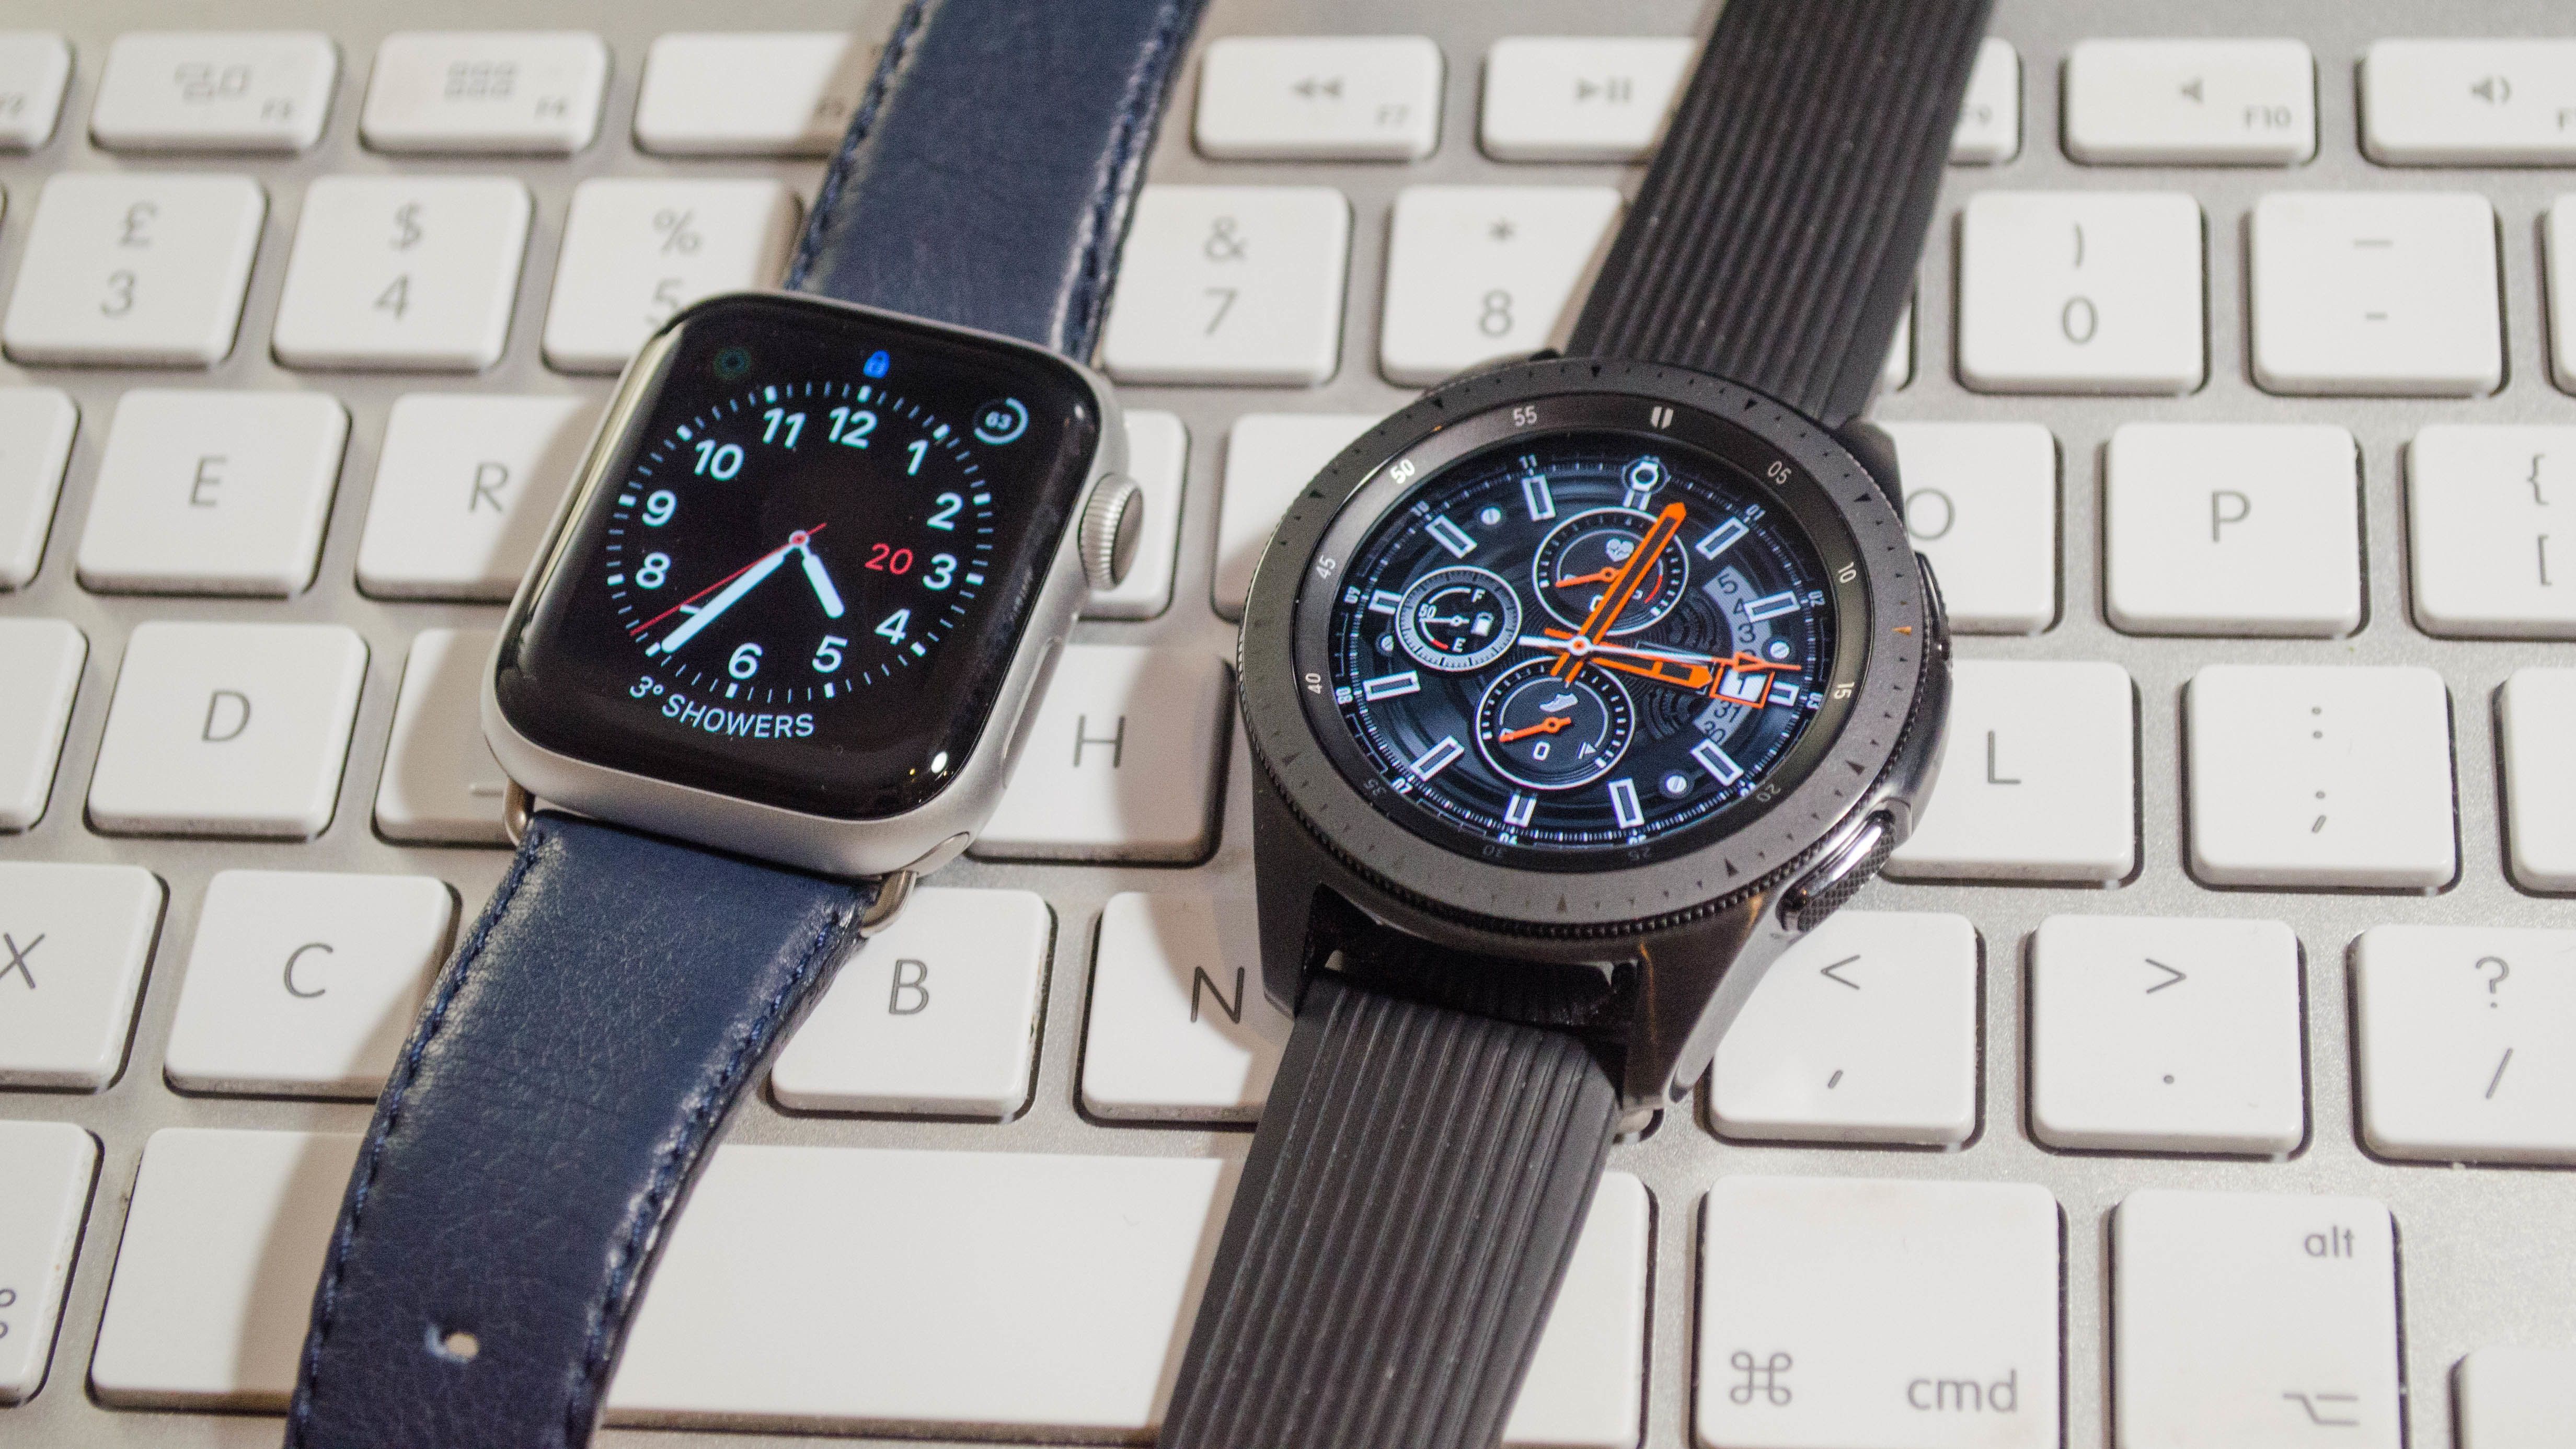 Apple Watch Series 4 vs Samsung Galaxy Watch: Which is best 